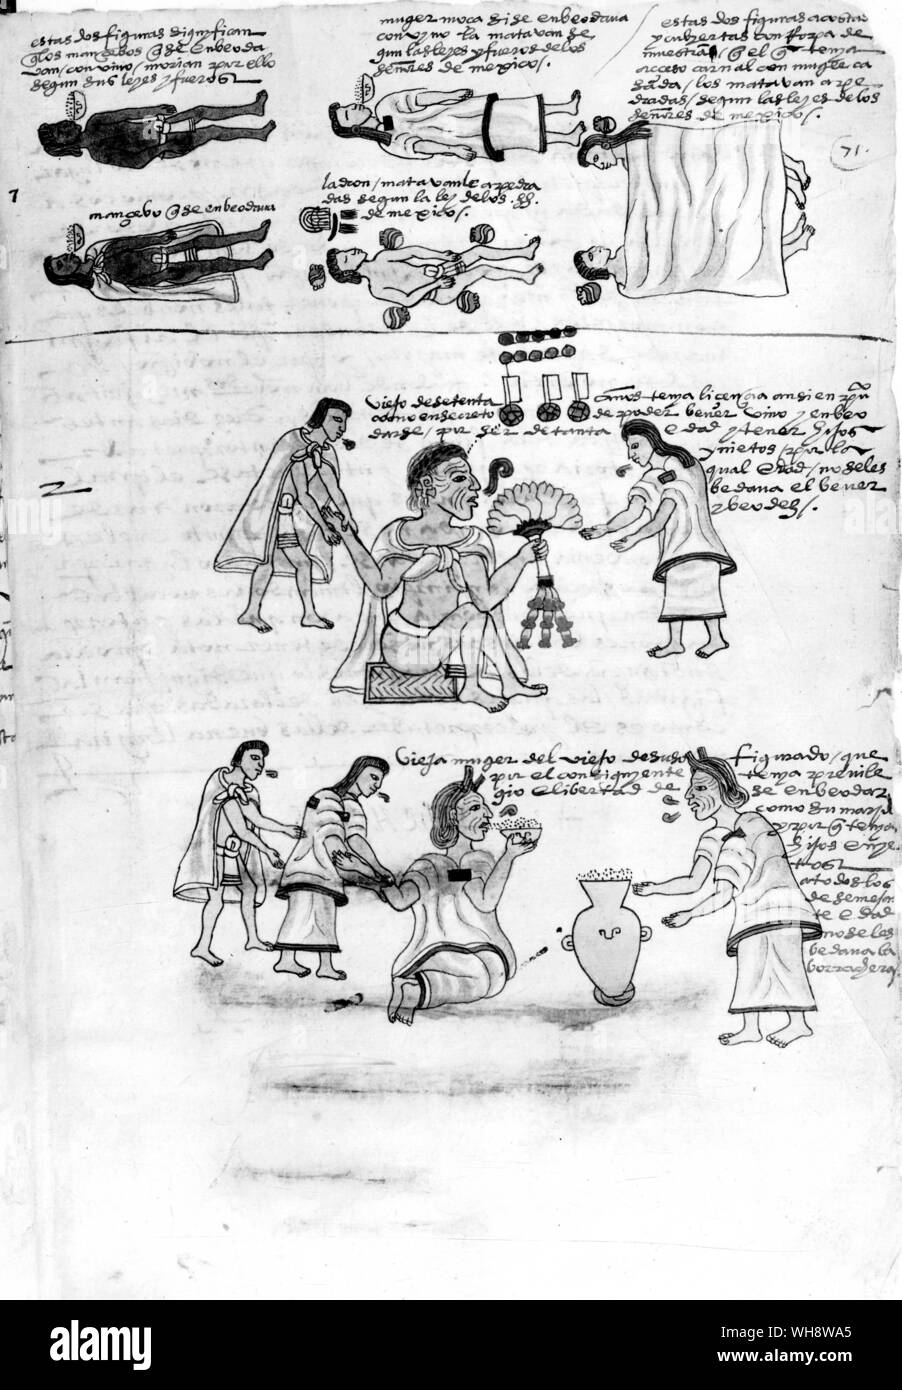 Las penas fueron severas en la sociedad azteca. Los culpables de la borrachera, el robo y el adulterio fueron condenados a muerte por lapidación (como se muestra en la parte superior), pero las personas mayores fueron autorizados a emborracharse (como se muestra en la parte inferior). El Codex Foto de stock